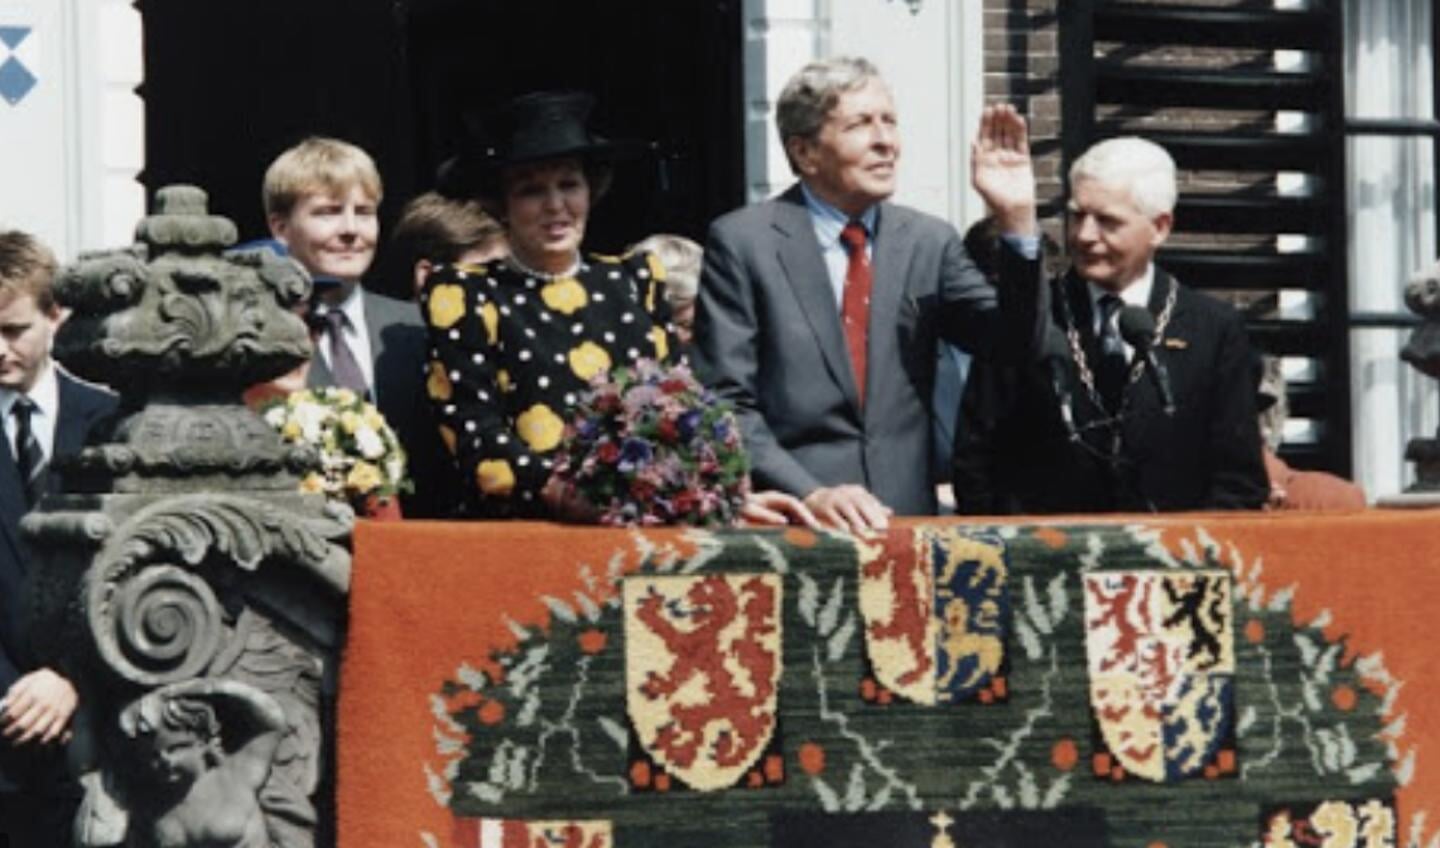 Van Haersma Buma (rechts) bij het bezoek van de koninklijke familie aan Sneek, in 1993.